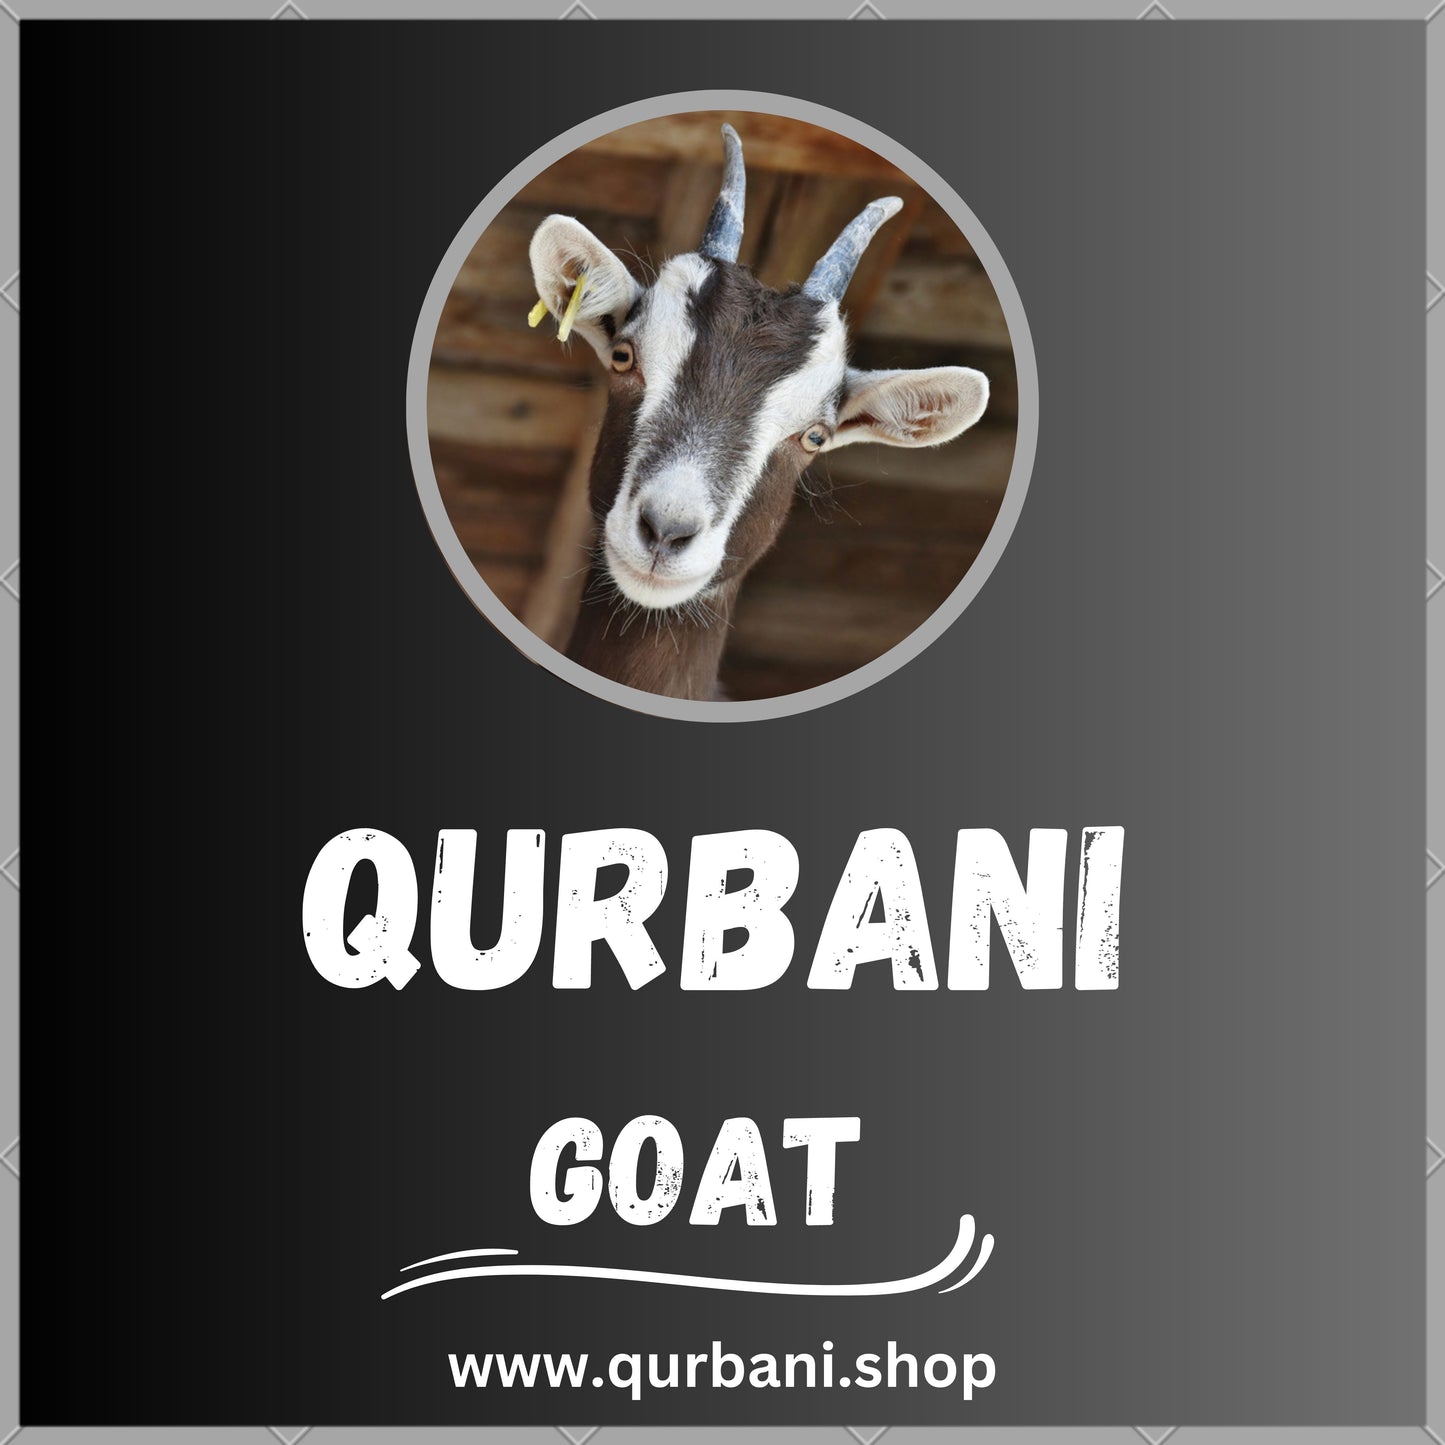 Perform Qurbani in Columbus - Book Your Eid Sacrifice